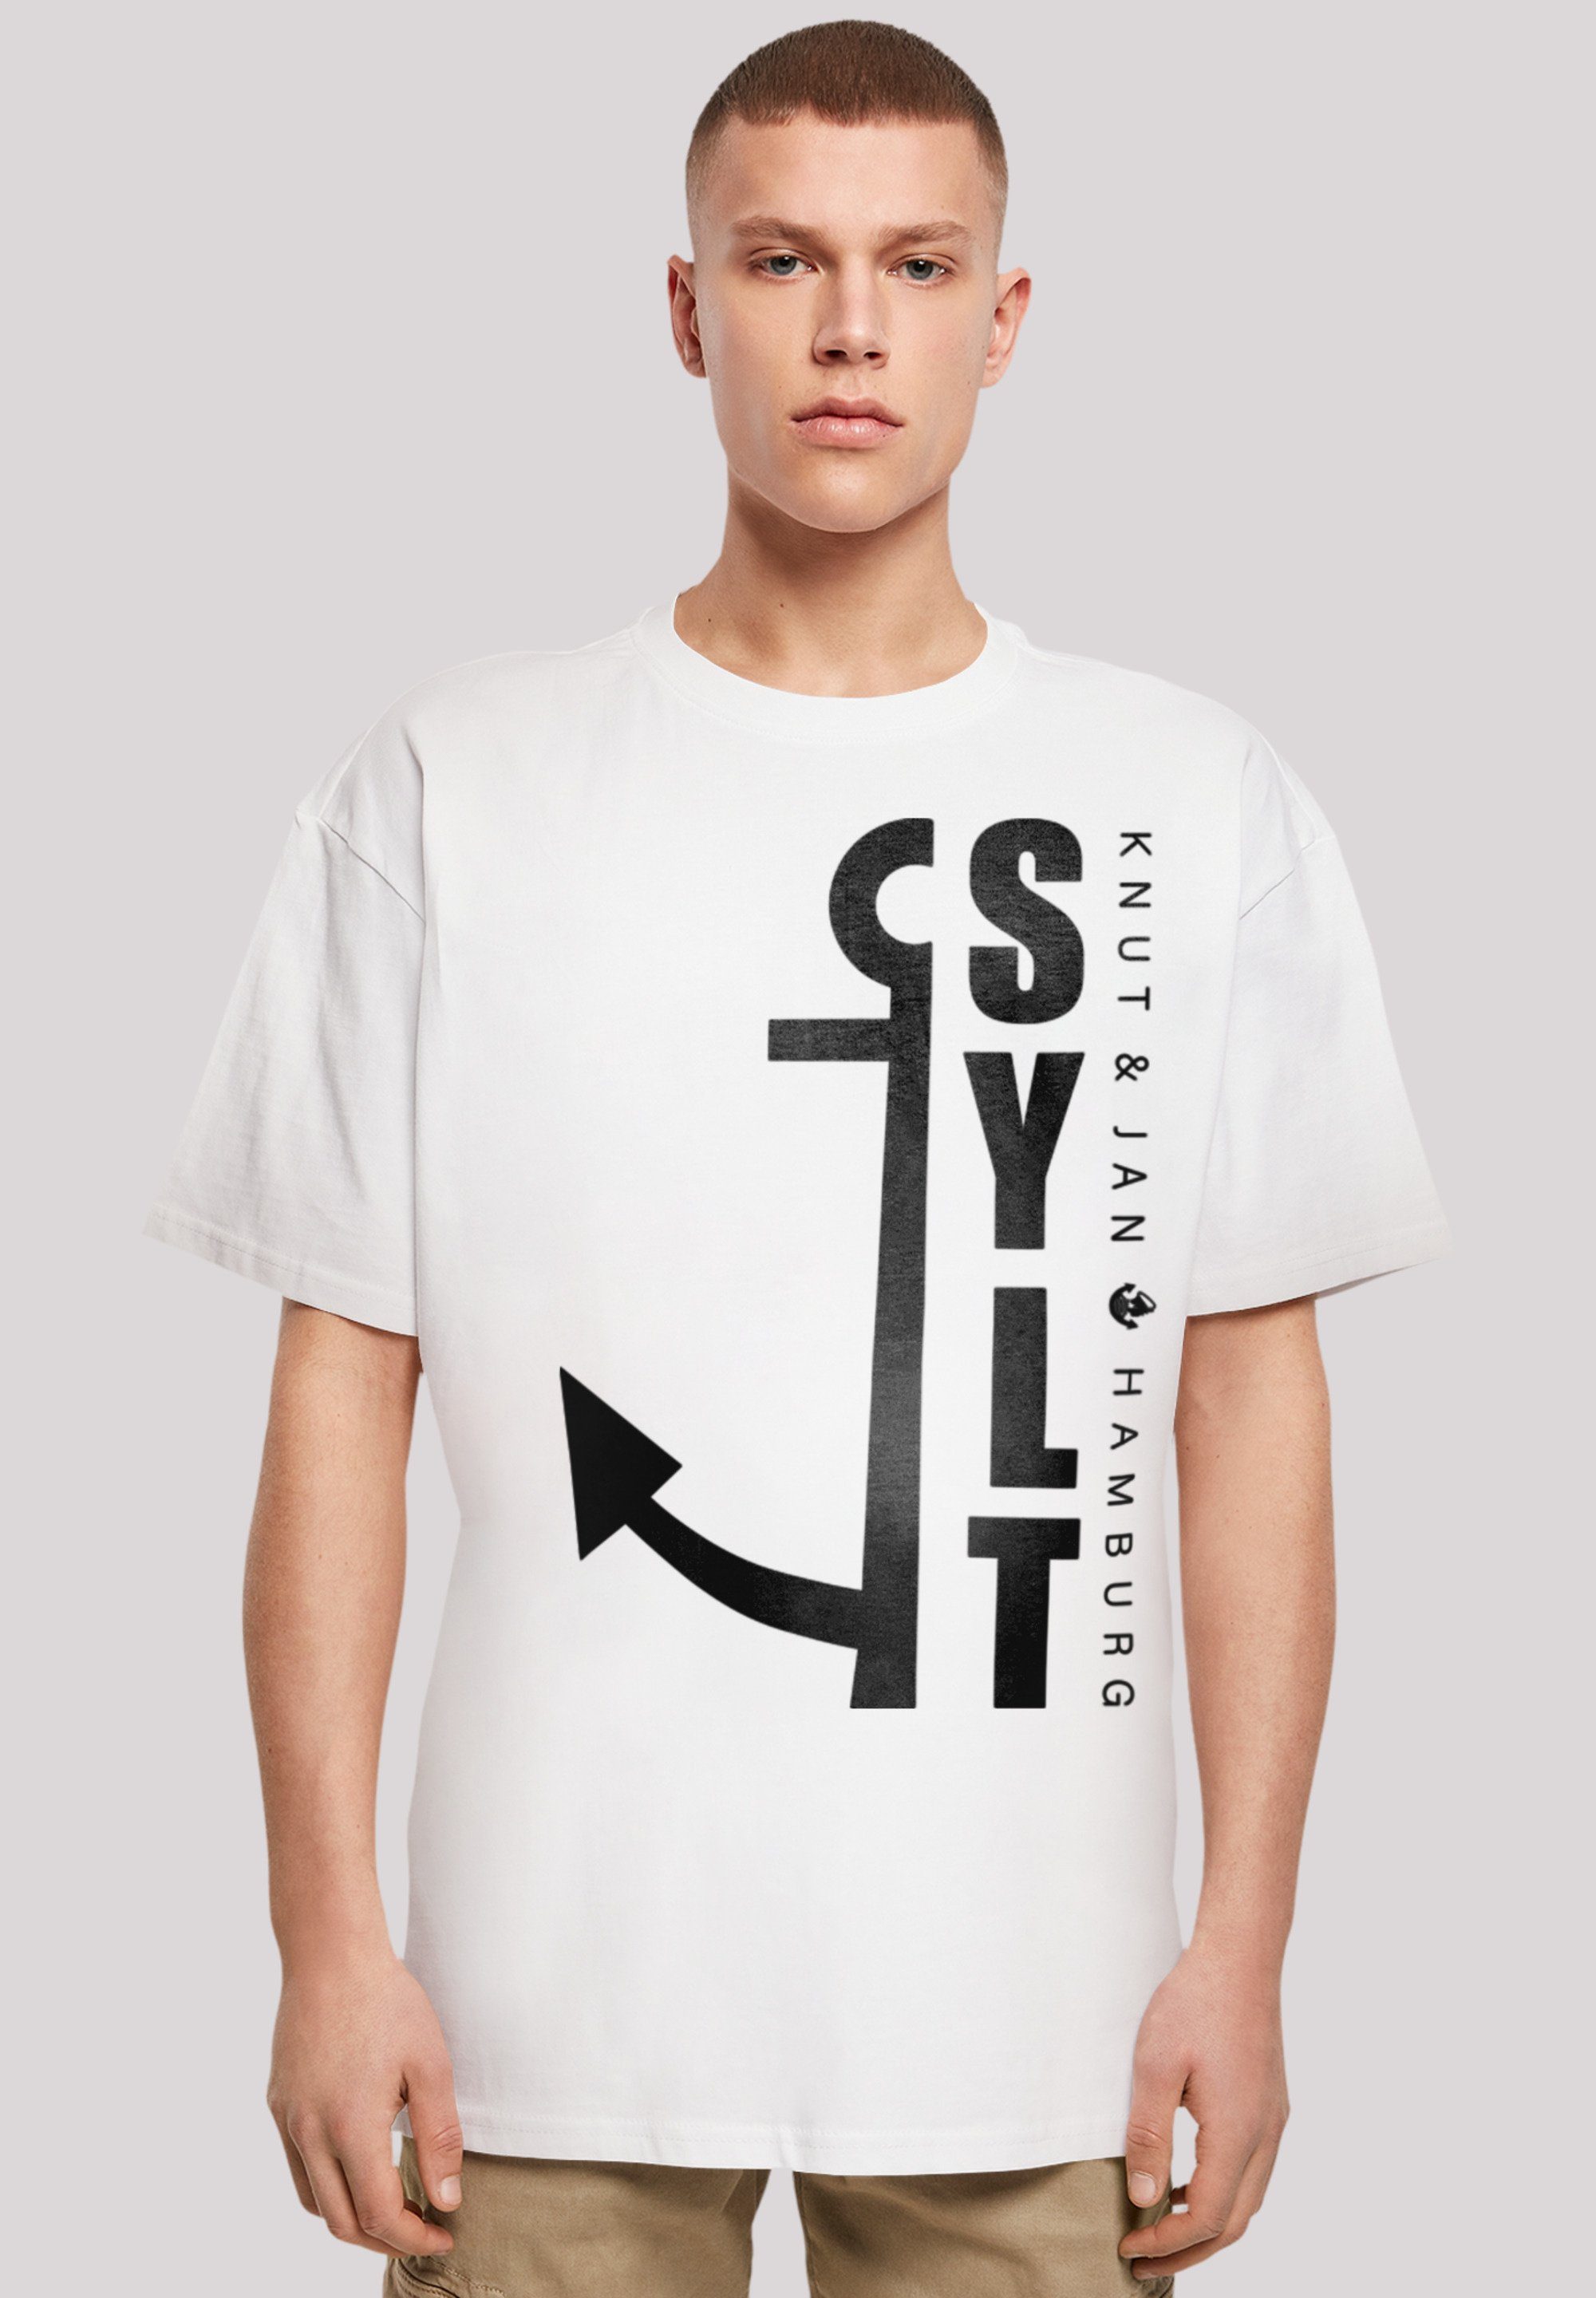 F4NT4STIC T-Shirt Sylt Anker Knut & Jan Hamburg Print weiß